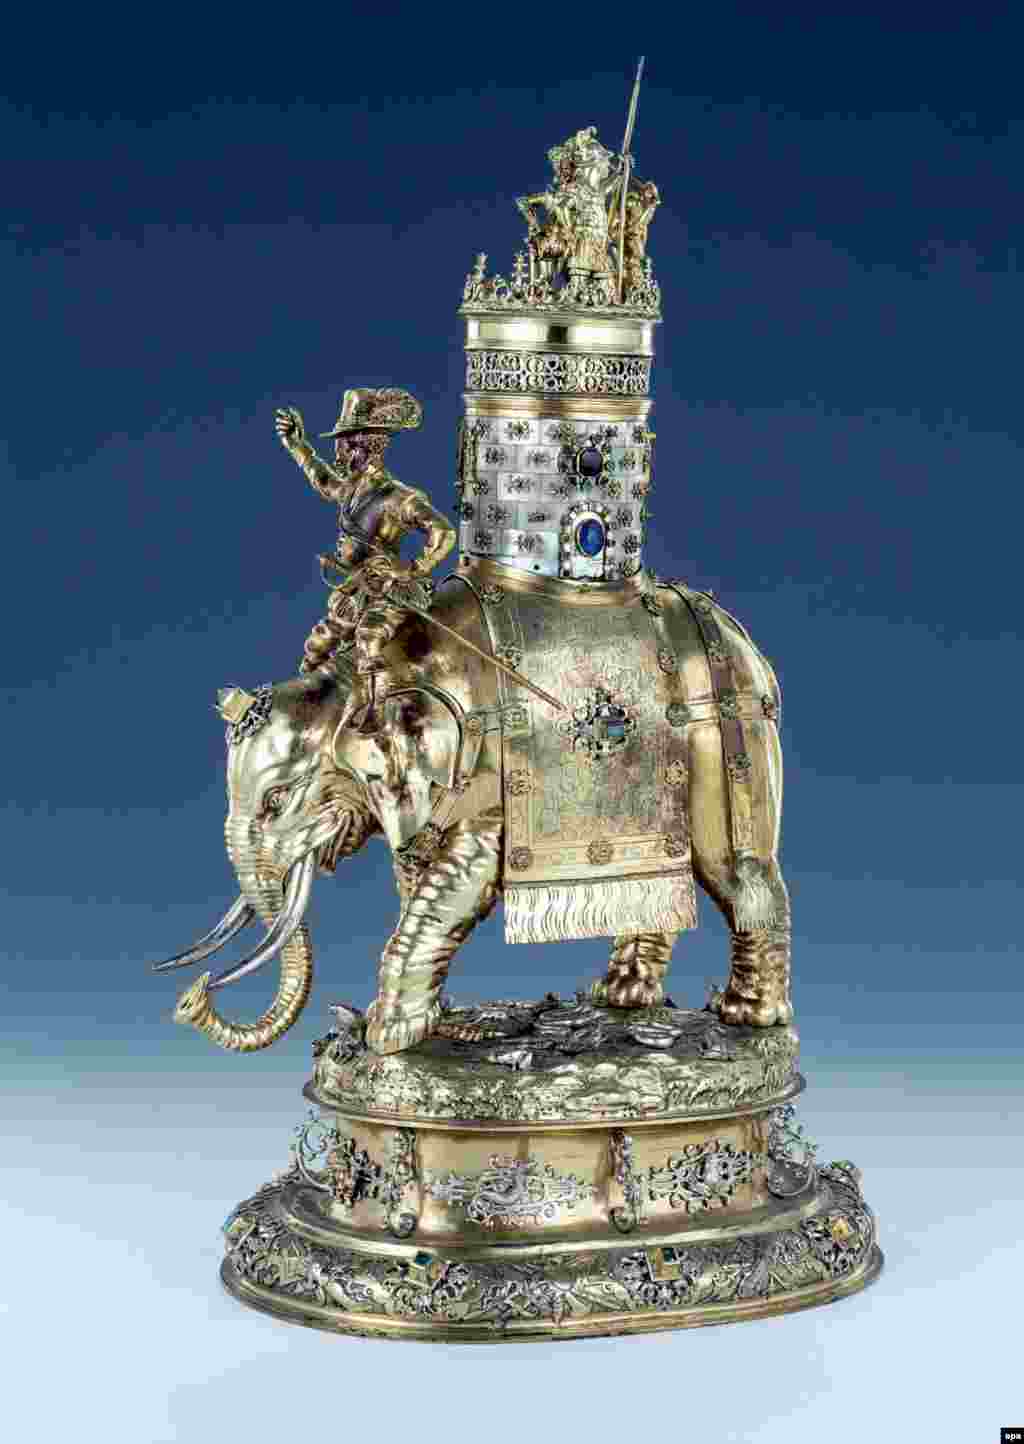 Кубок в виде слона, сделанный Урбаном Вольфом в Нюрнберге в конце 16-го века. Это произведение выполнено из серебра, позолоты, перламутра и самоцветов.